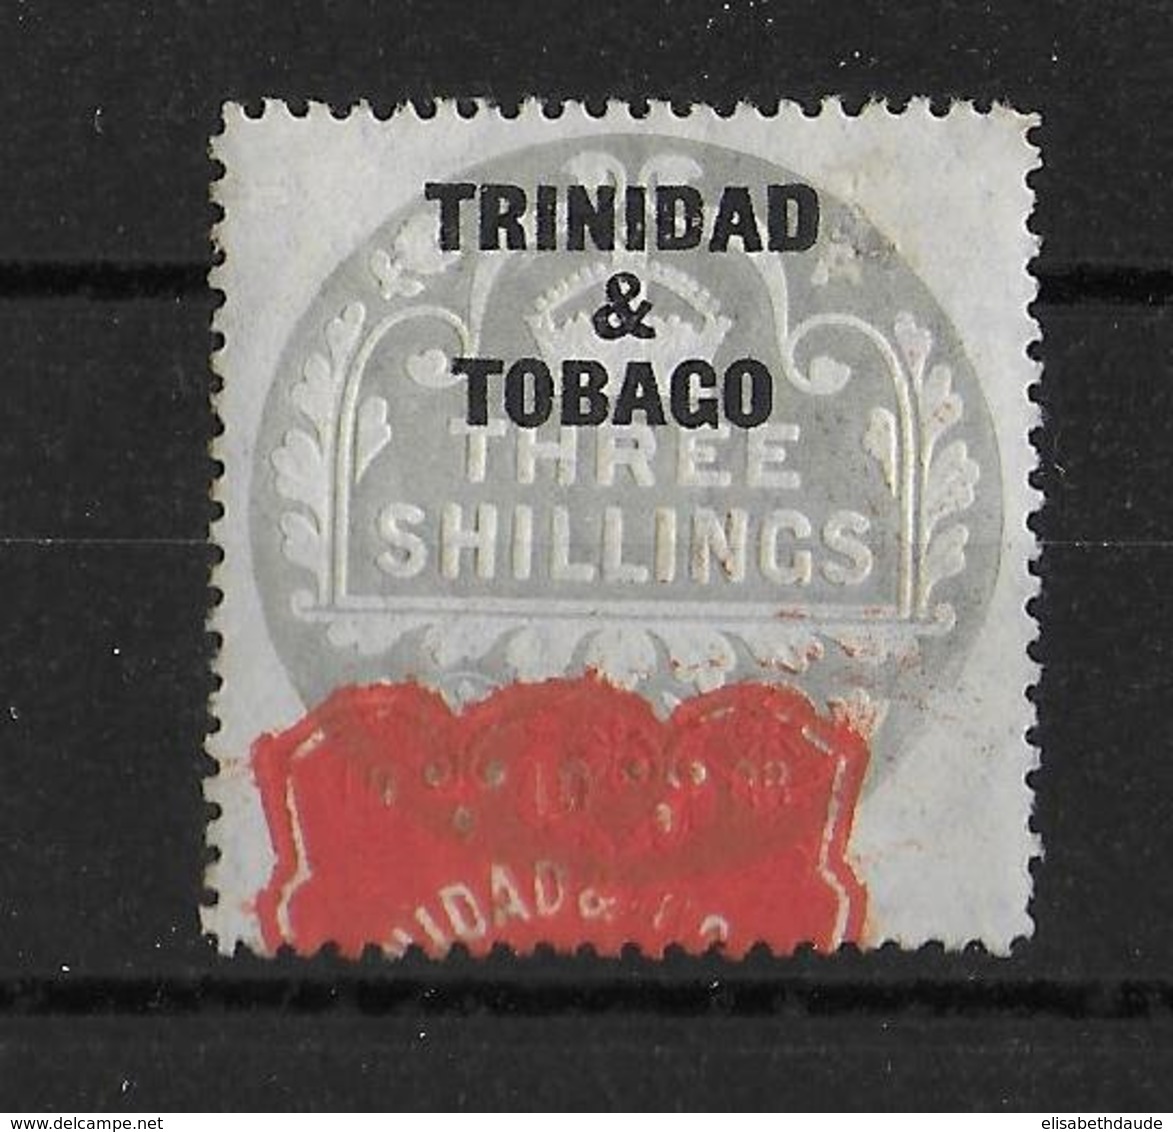 TRINIDAD & TOBAGO - TIMBRE FISCAL * - STAMP DUTY - Trinidad & Tobago (...-1961)